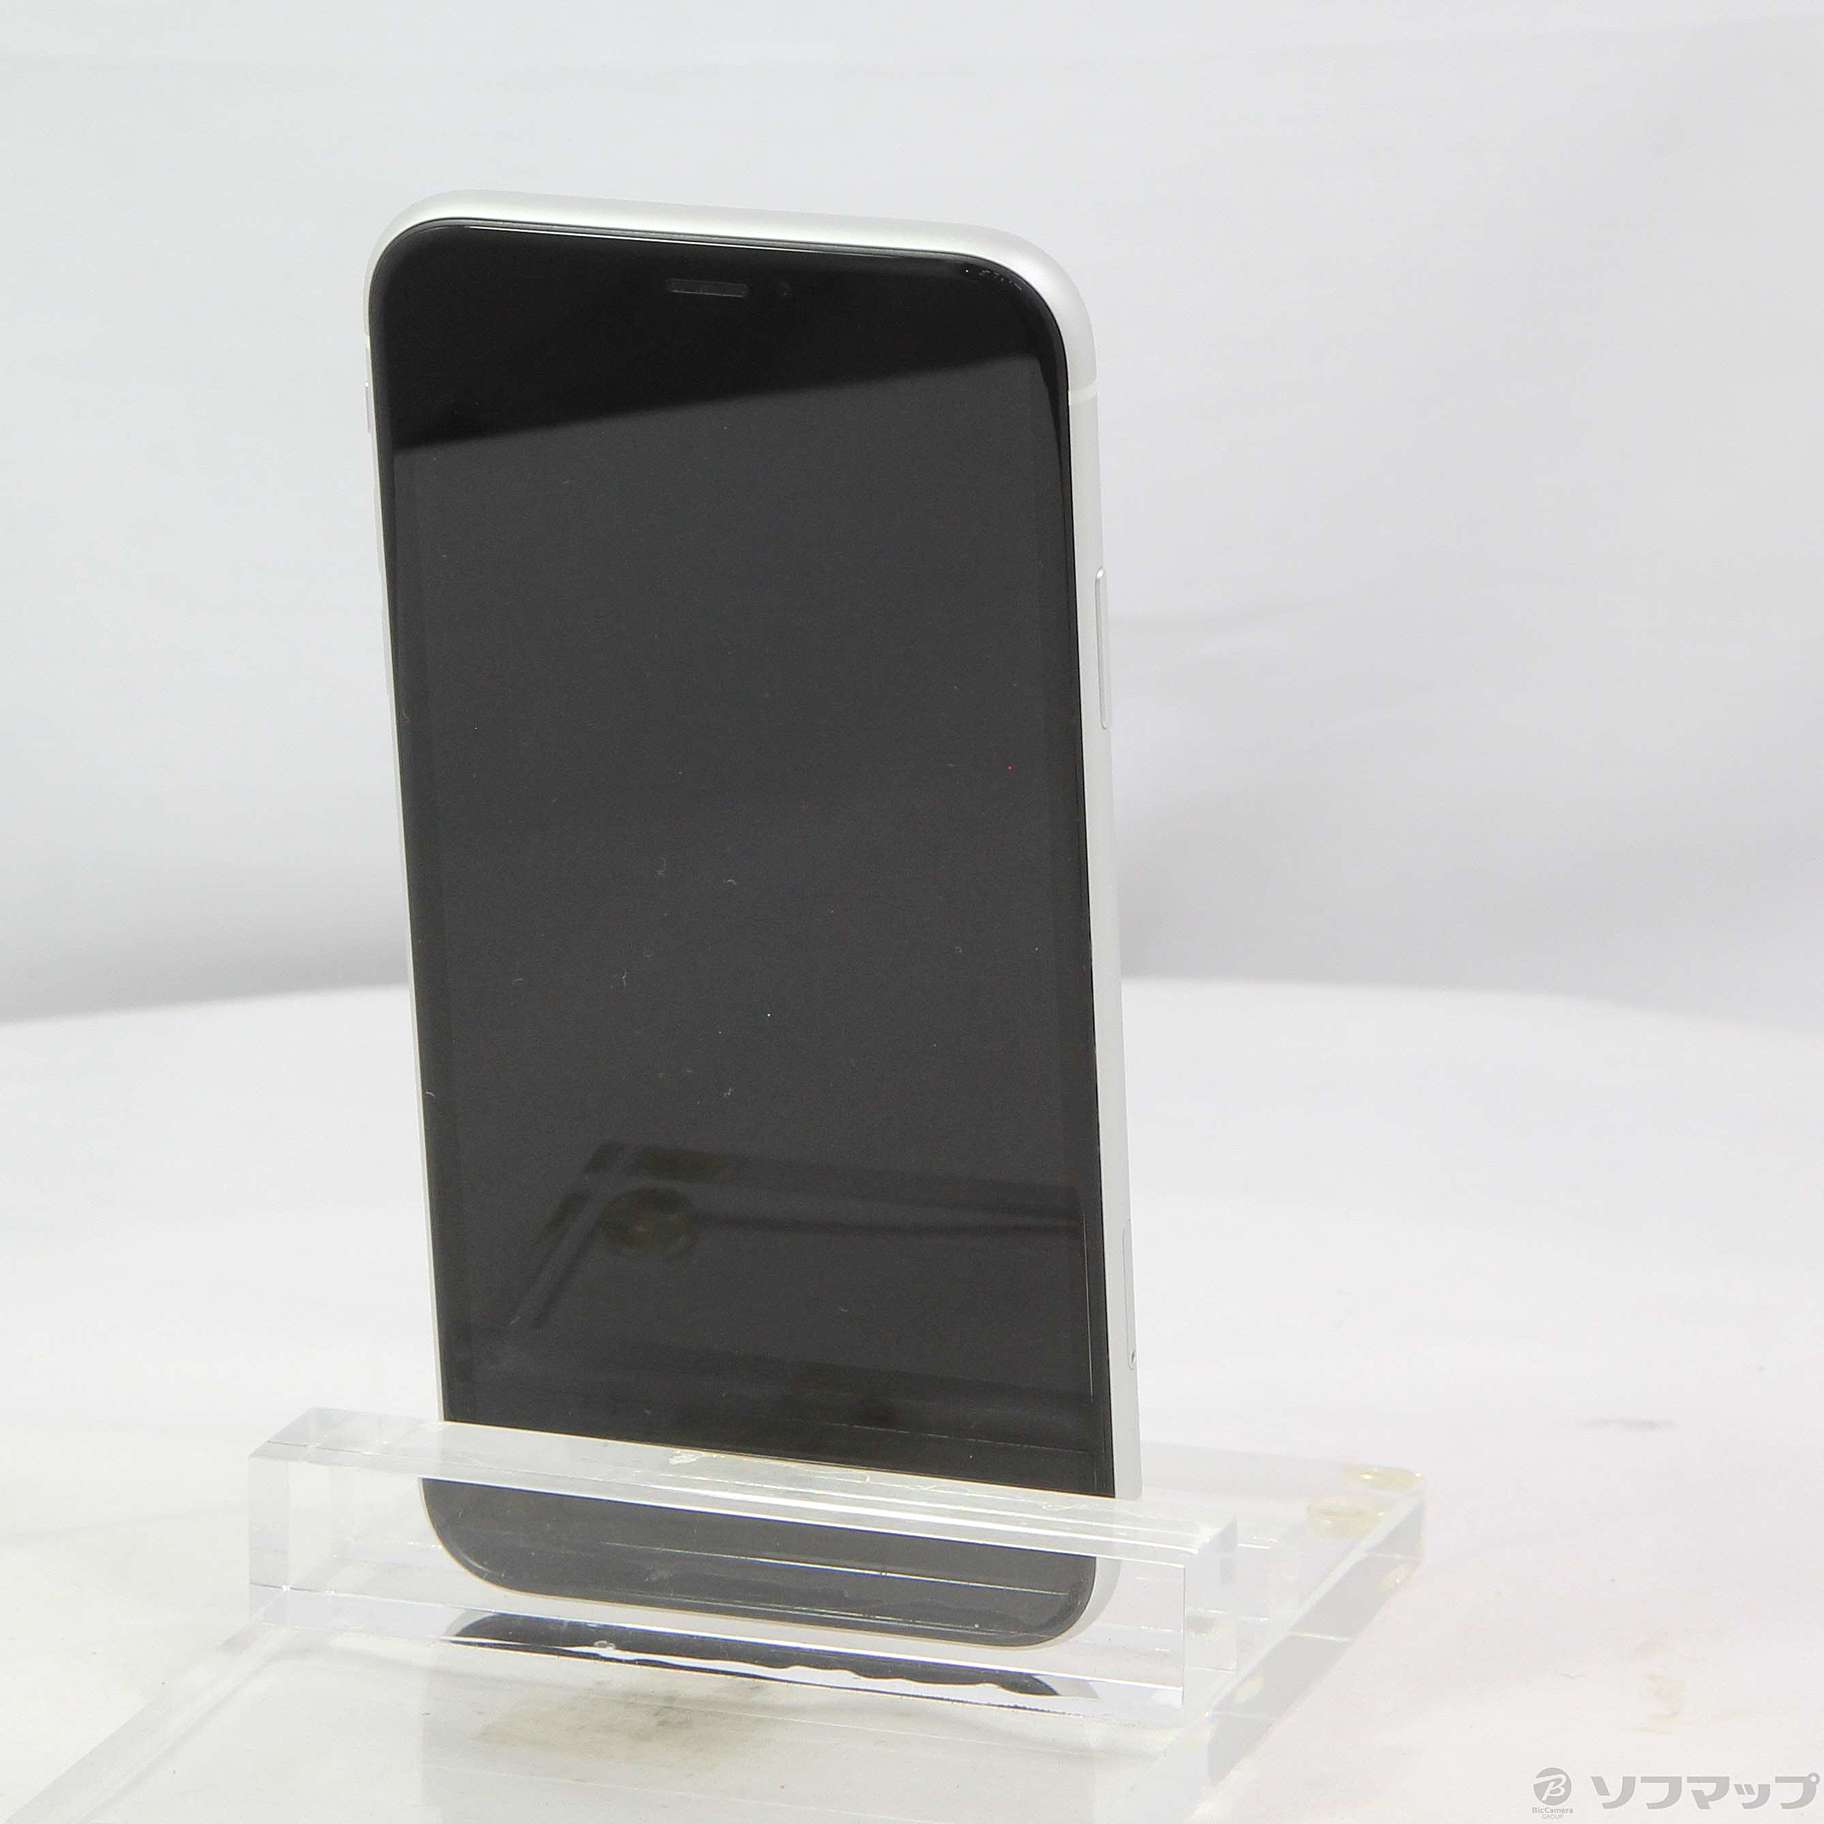 iPhoneXR 64GB BL SIMフリー & Airpods2セット販売 - www.sorbillomenu.com